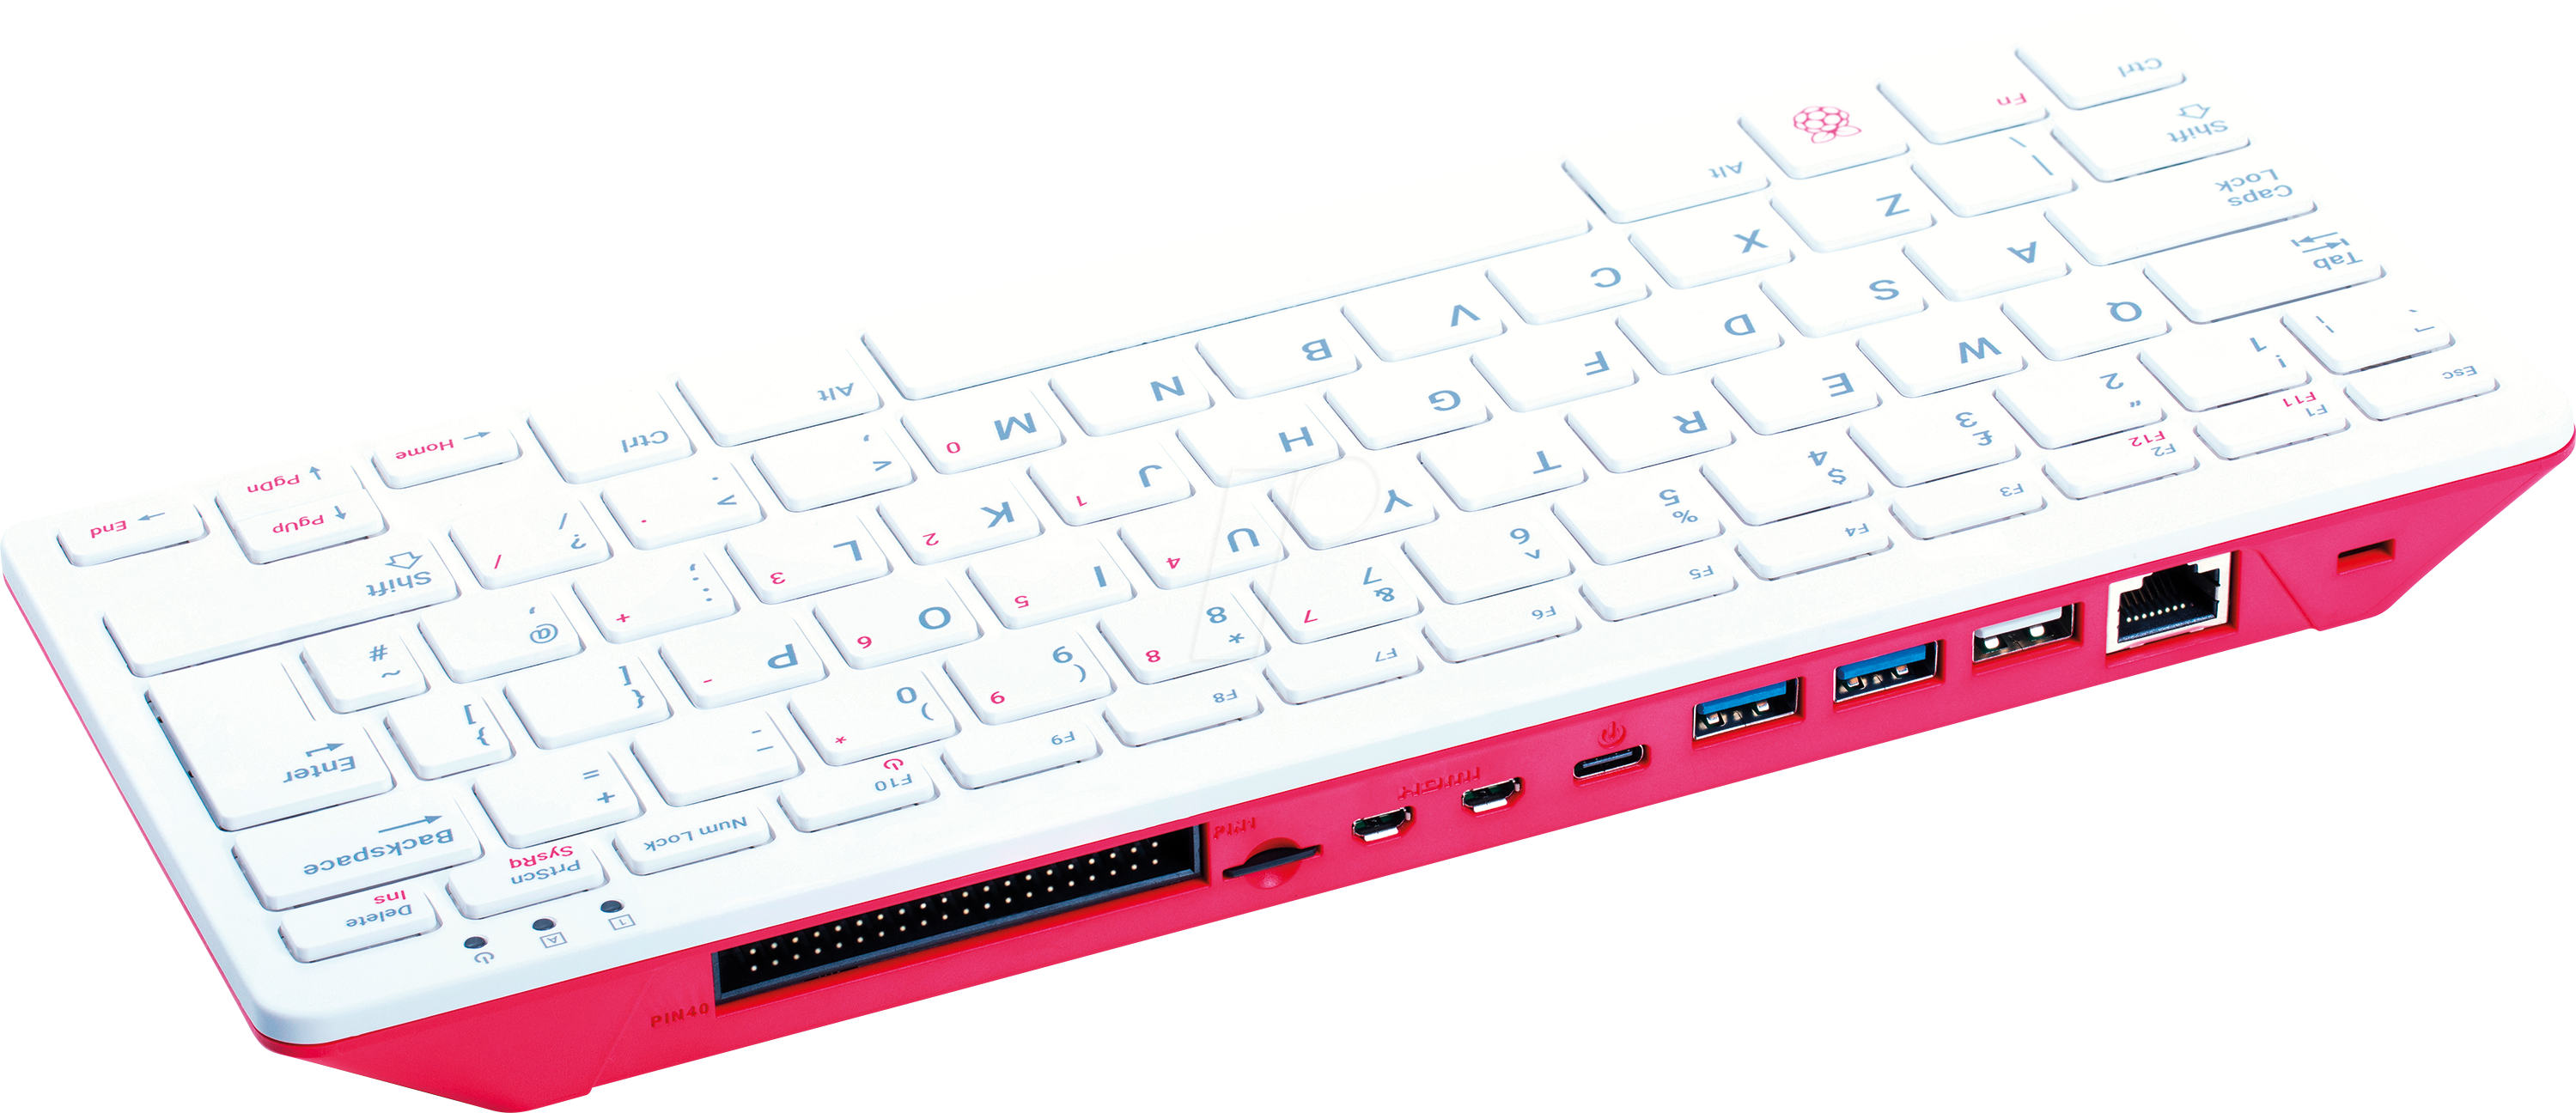 RASP PI400DE - Raspberry Pi 400 (DE), 4x 1,8GHz, 4GB RAM